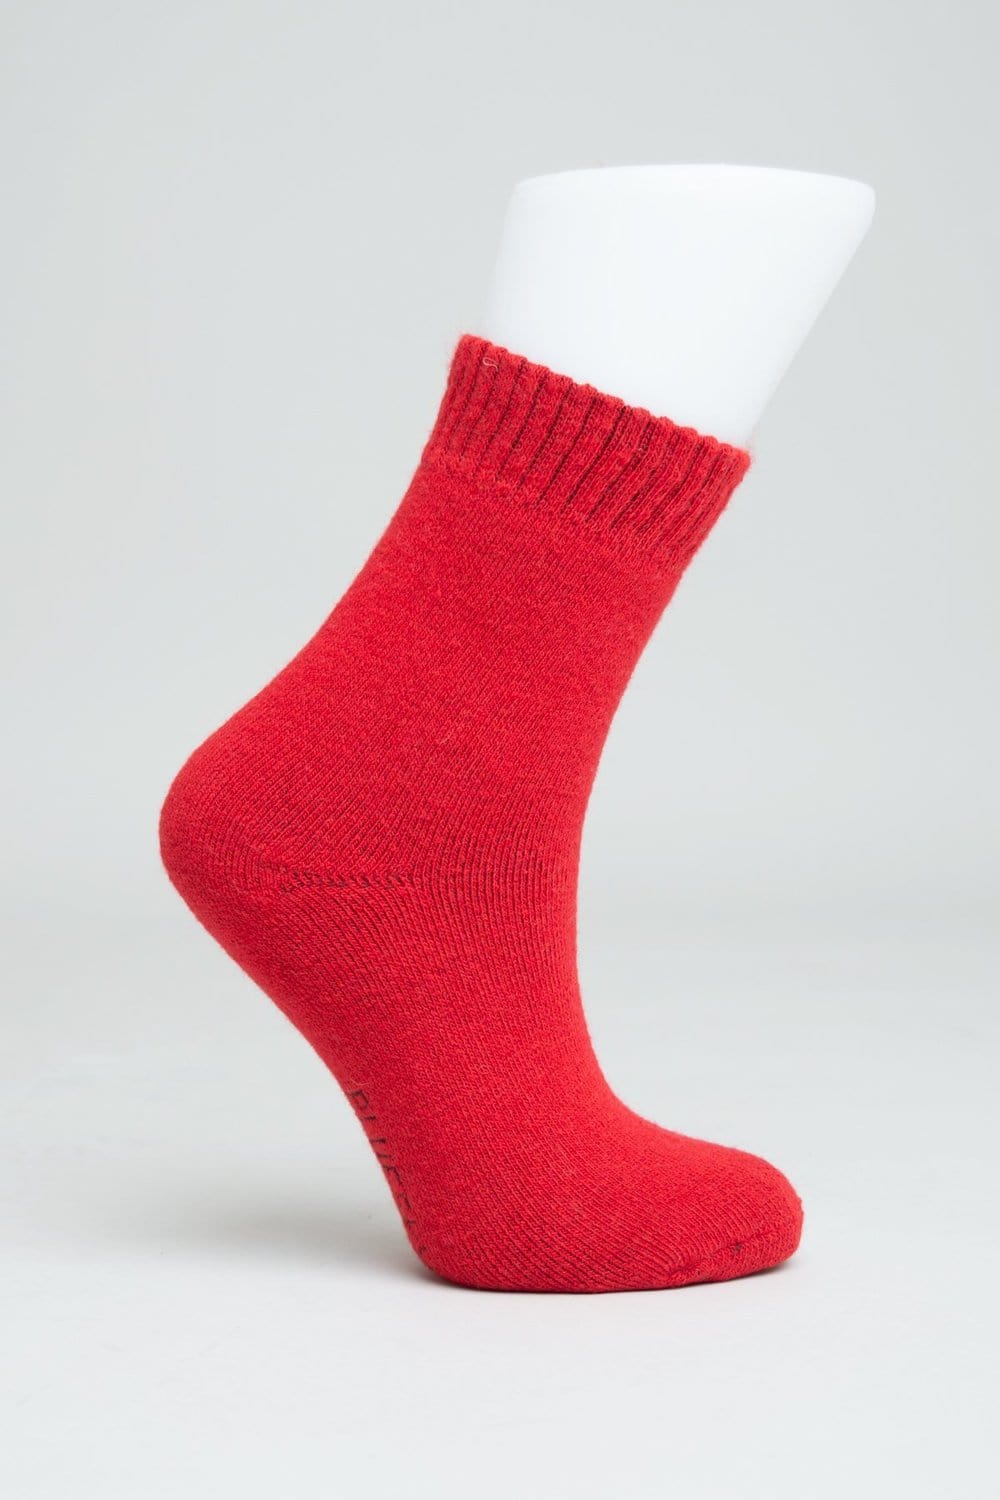 Blue Sky Women&#39;s Socks Red / M Women&#39;s Socks - Merino Wool